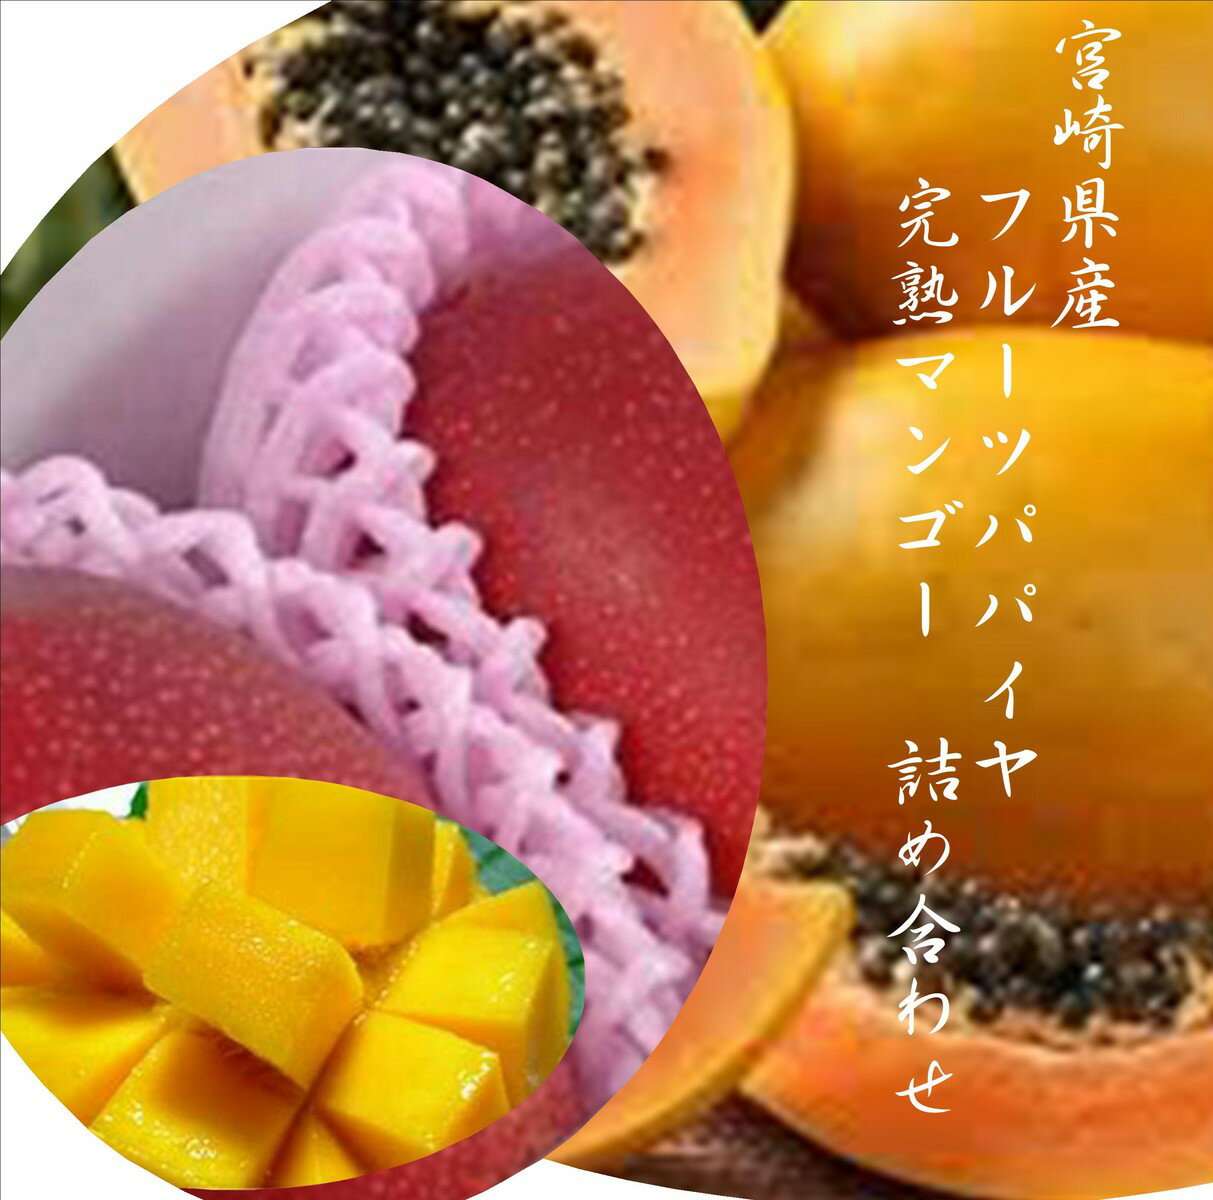 「宮崎県産フルーツパパイヤ」「宮崎県産完熟マンゴー」国産ならではの味わい！！1箱（700g）各1玉入り※マンゴーは2L以上をお詰め合わせいたします。